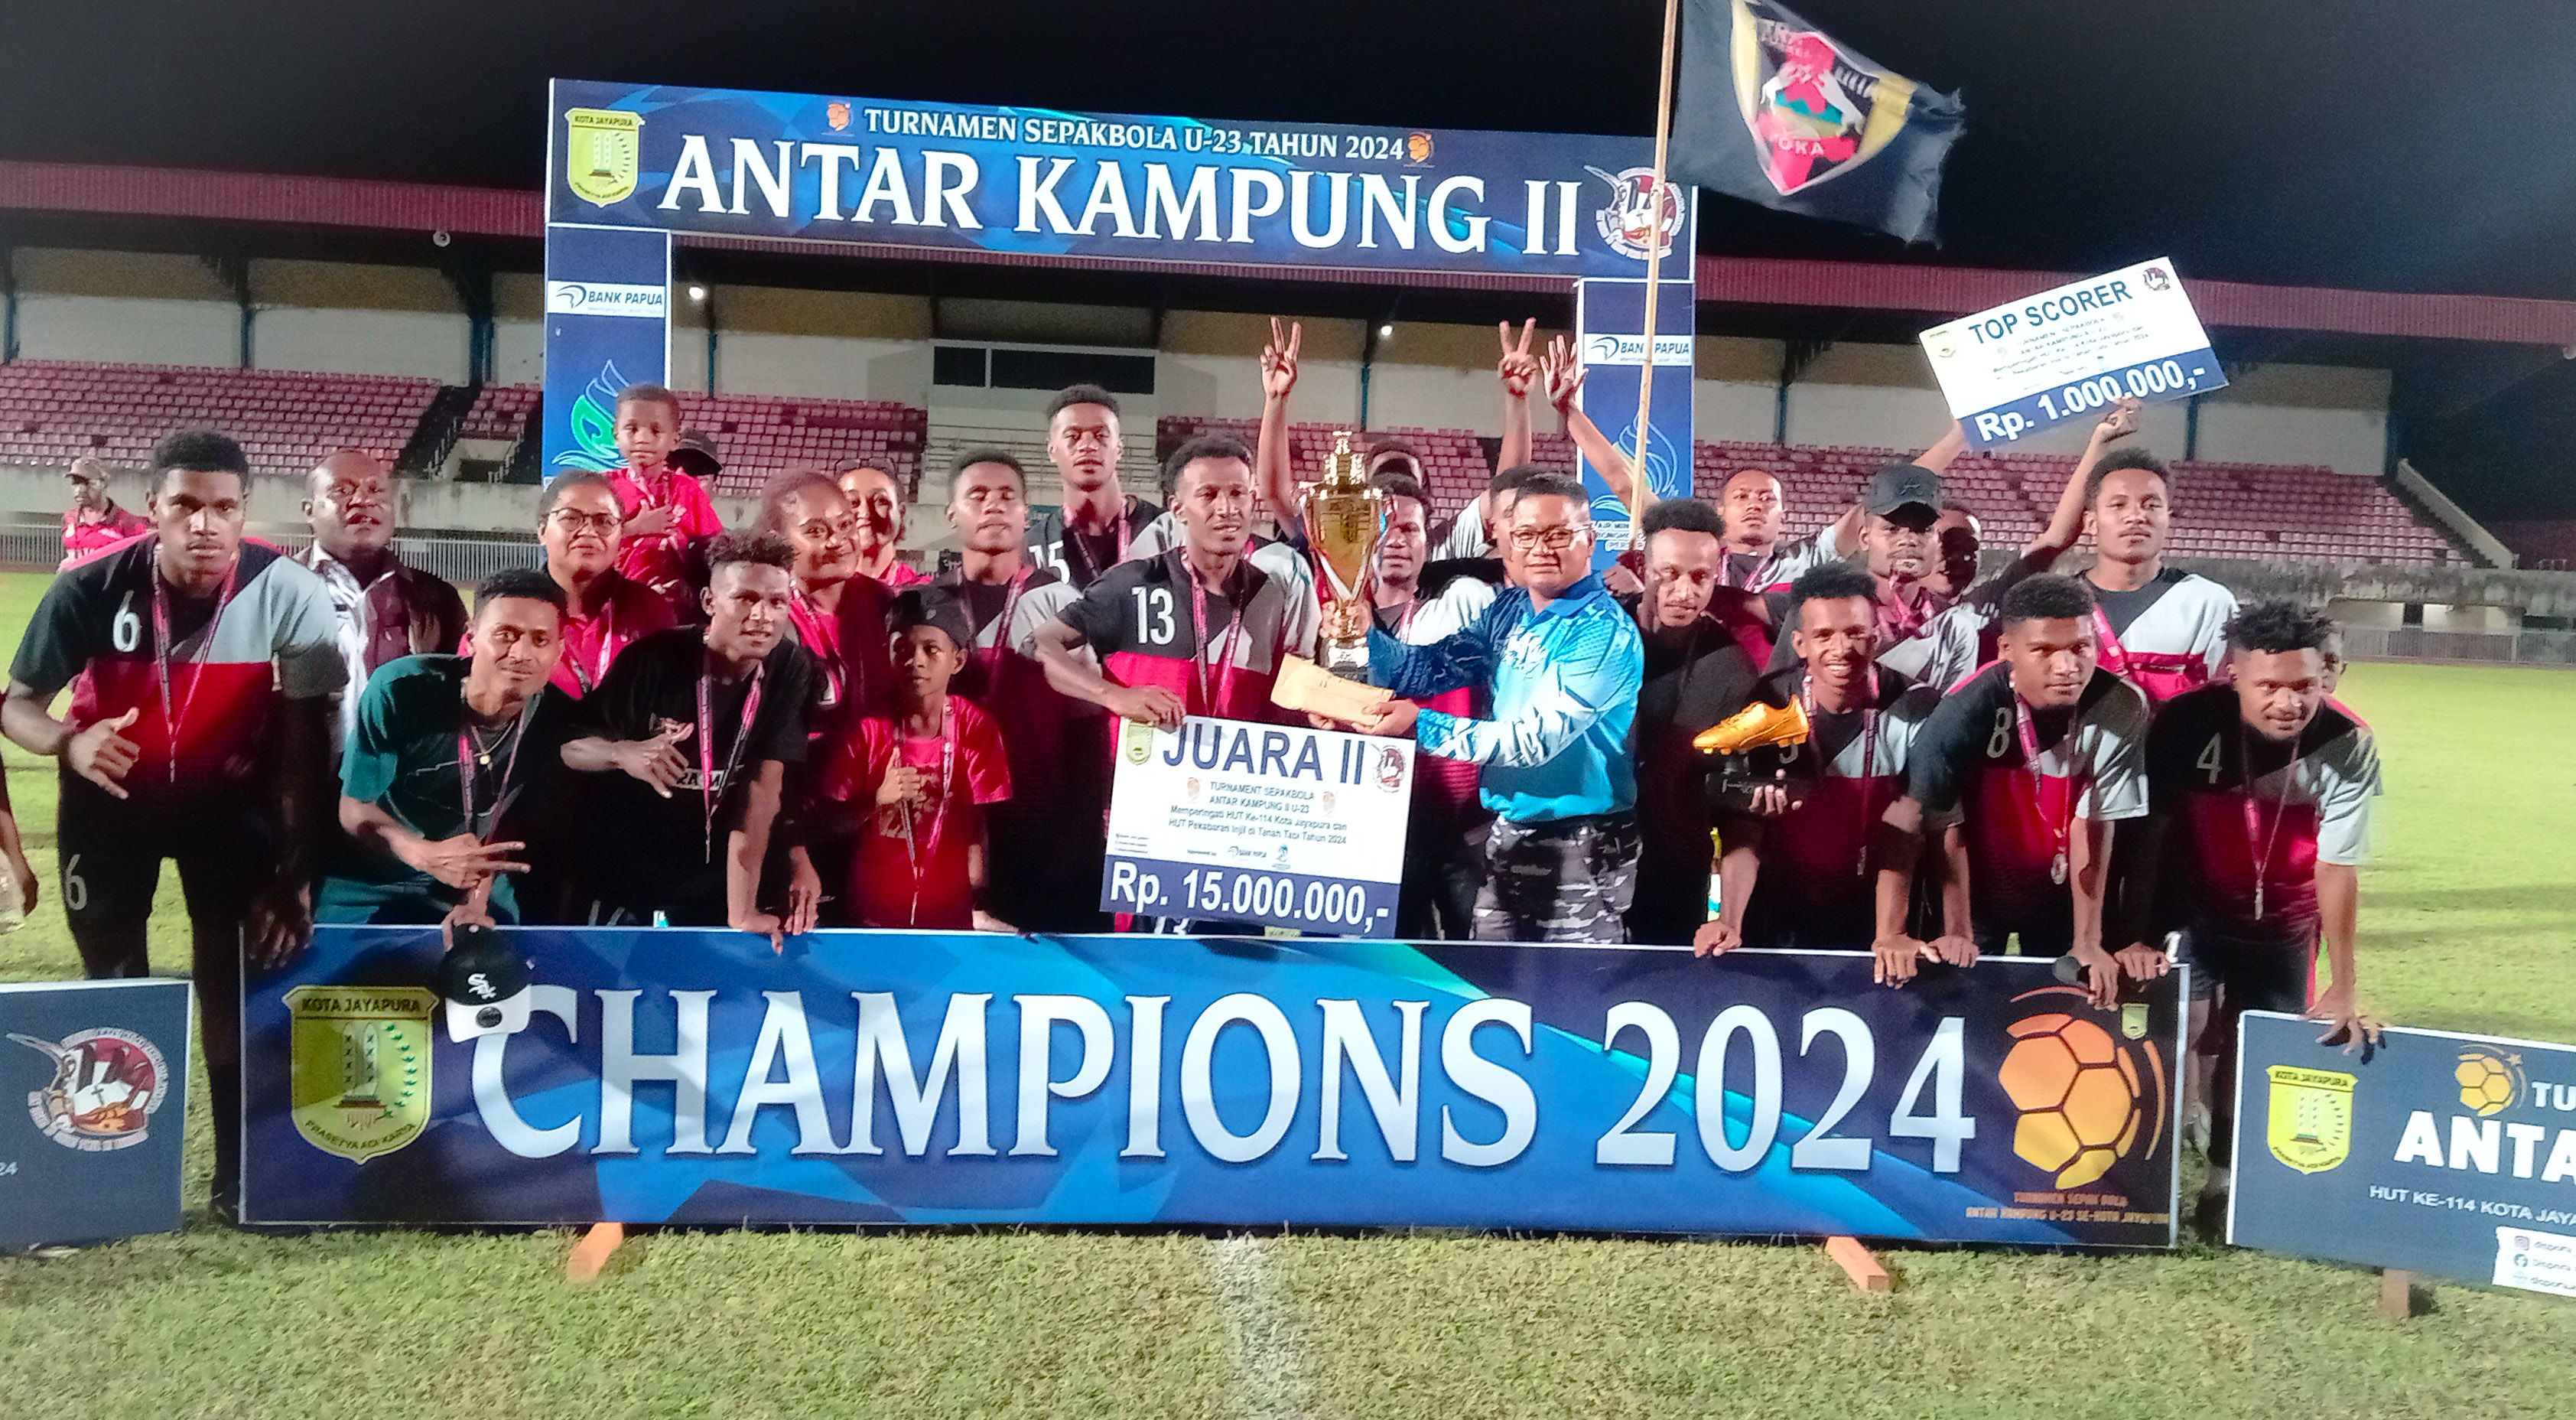 PS Yoka dari Kampung Yoka sebagai Juara ke-II Turnamen Sepakbola U-23 Antar Kampung (Portal Papua) Silas Ramandey